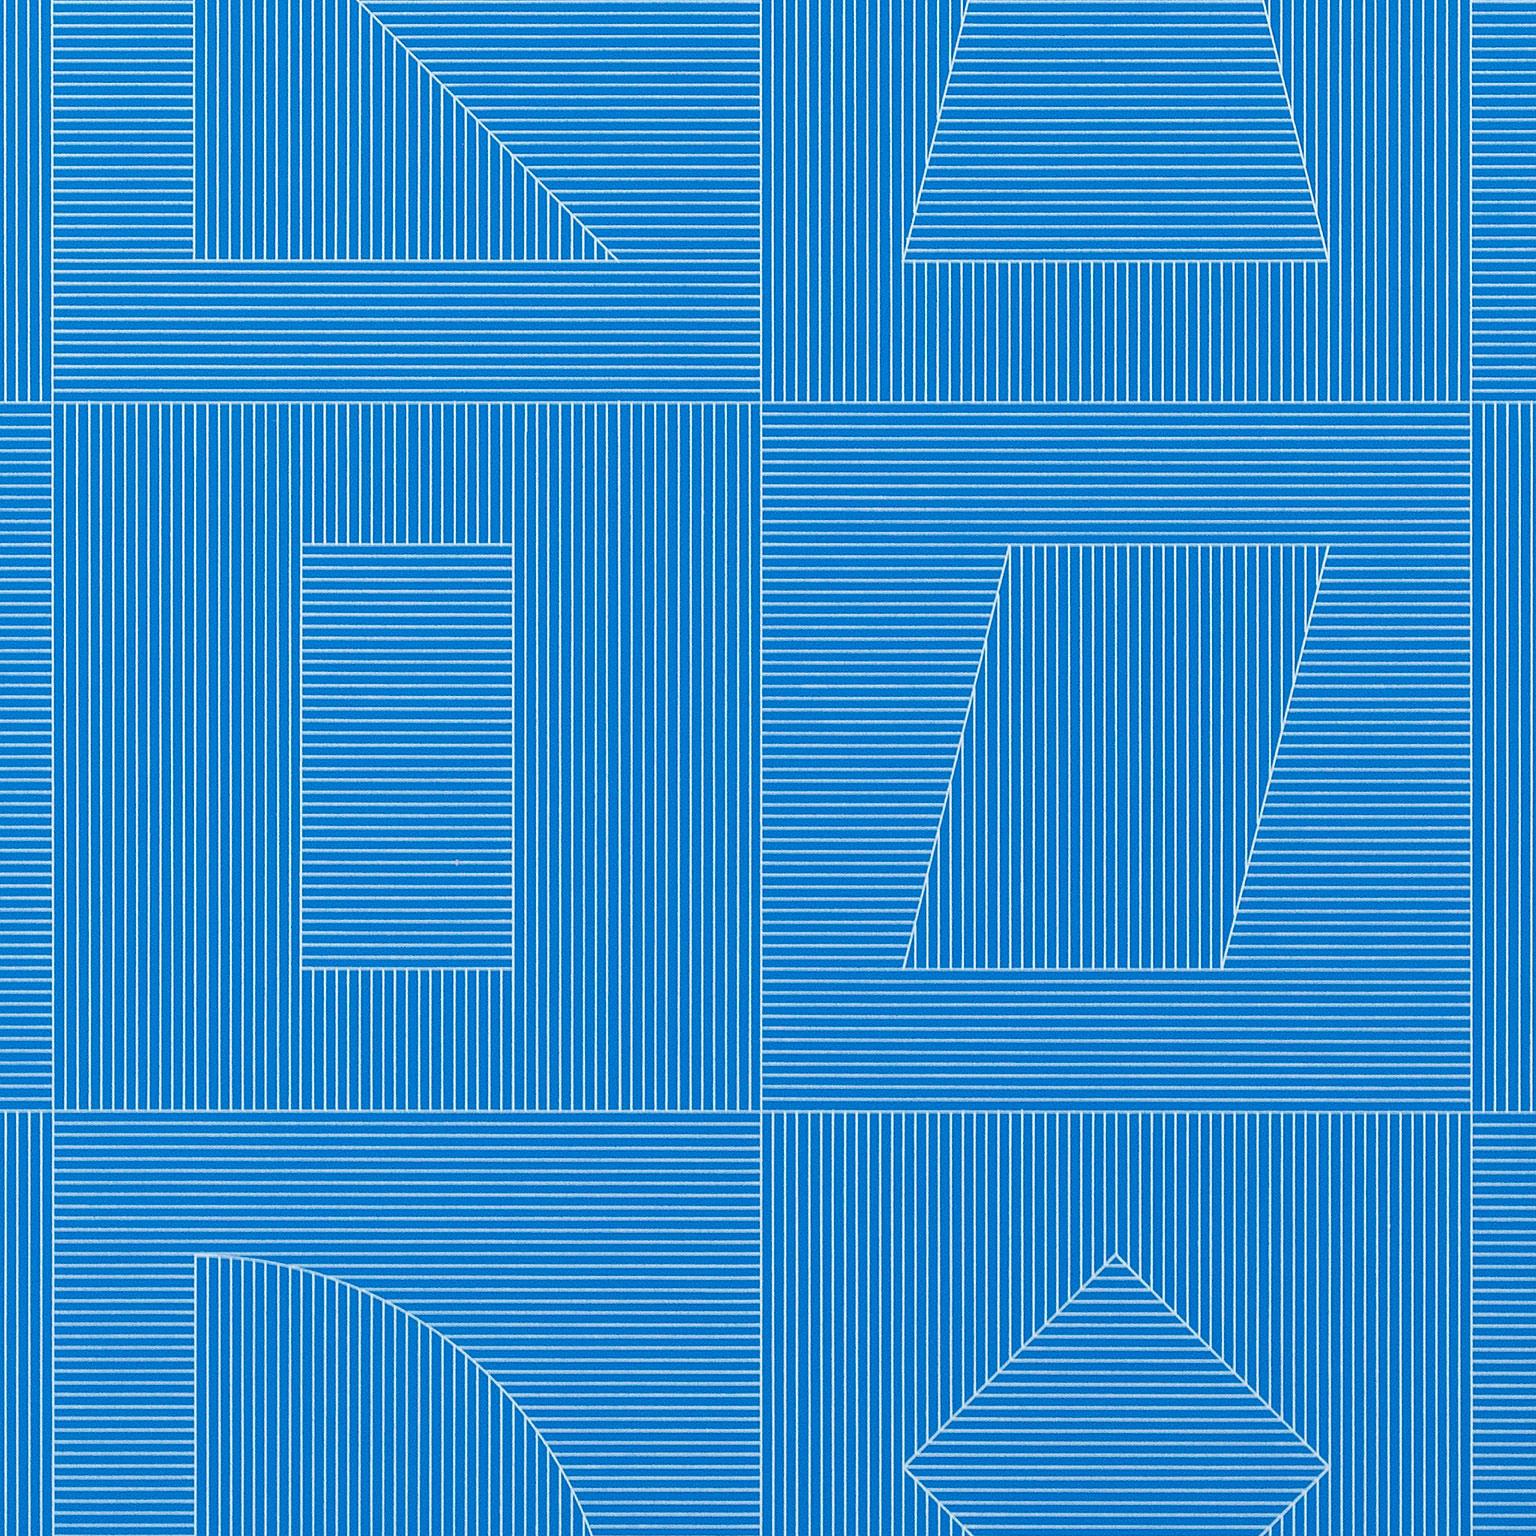 Vier Seiten des Turms – Blau (Geometrische Abstraktion), Print, von Sol LeWitt